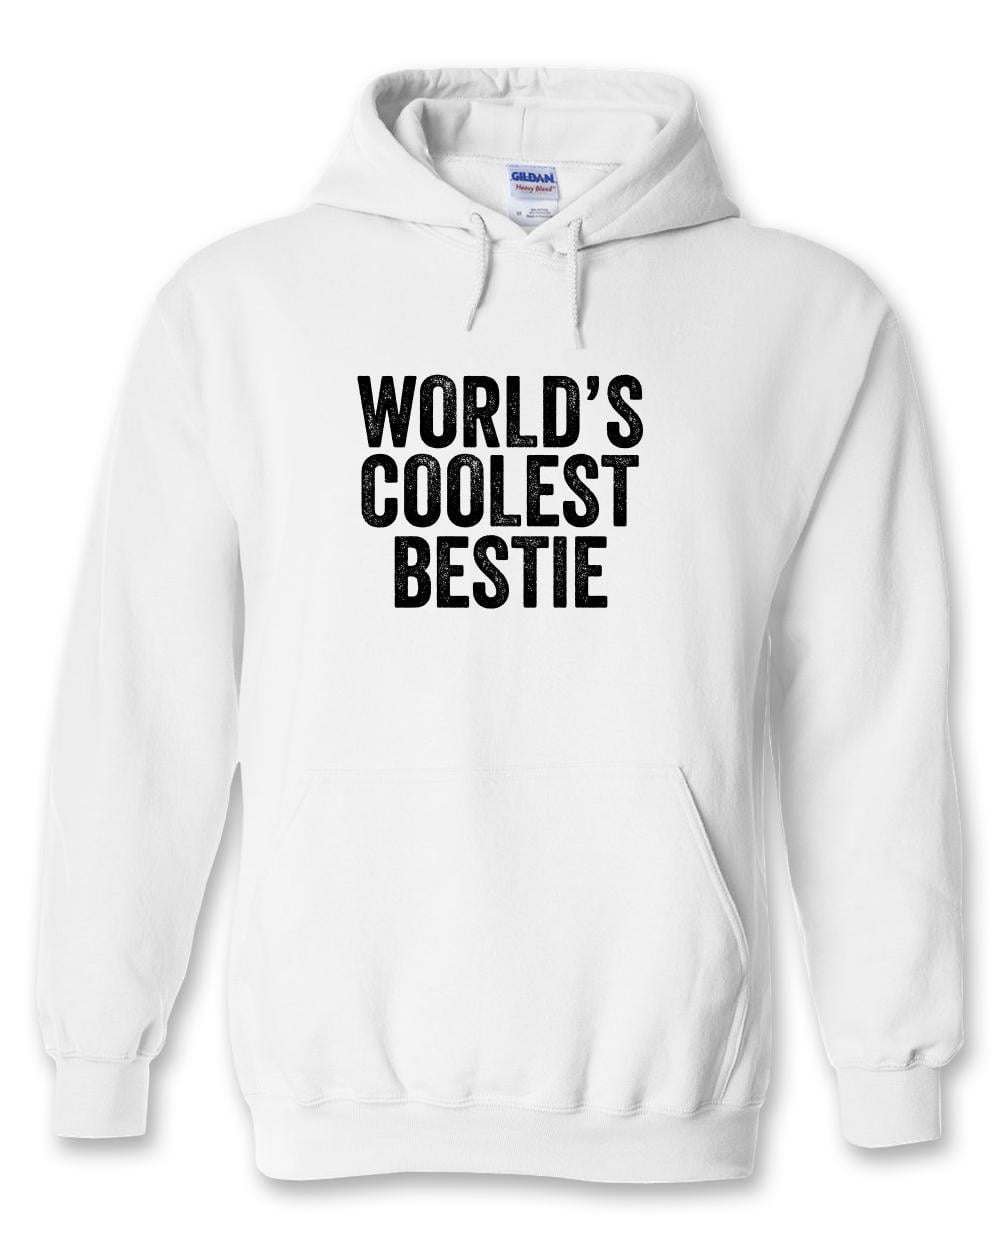 World's Coolest Bestie Hoodie - ID: 920 - Walmart.com